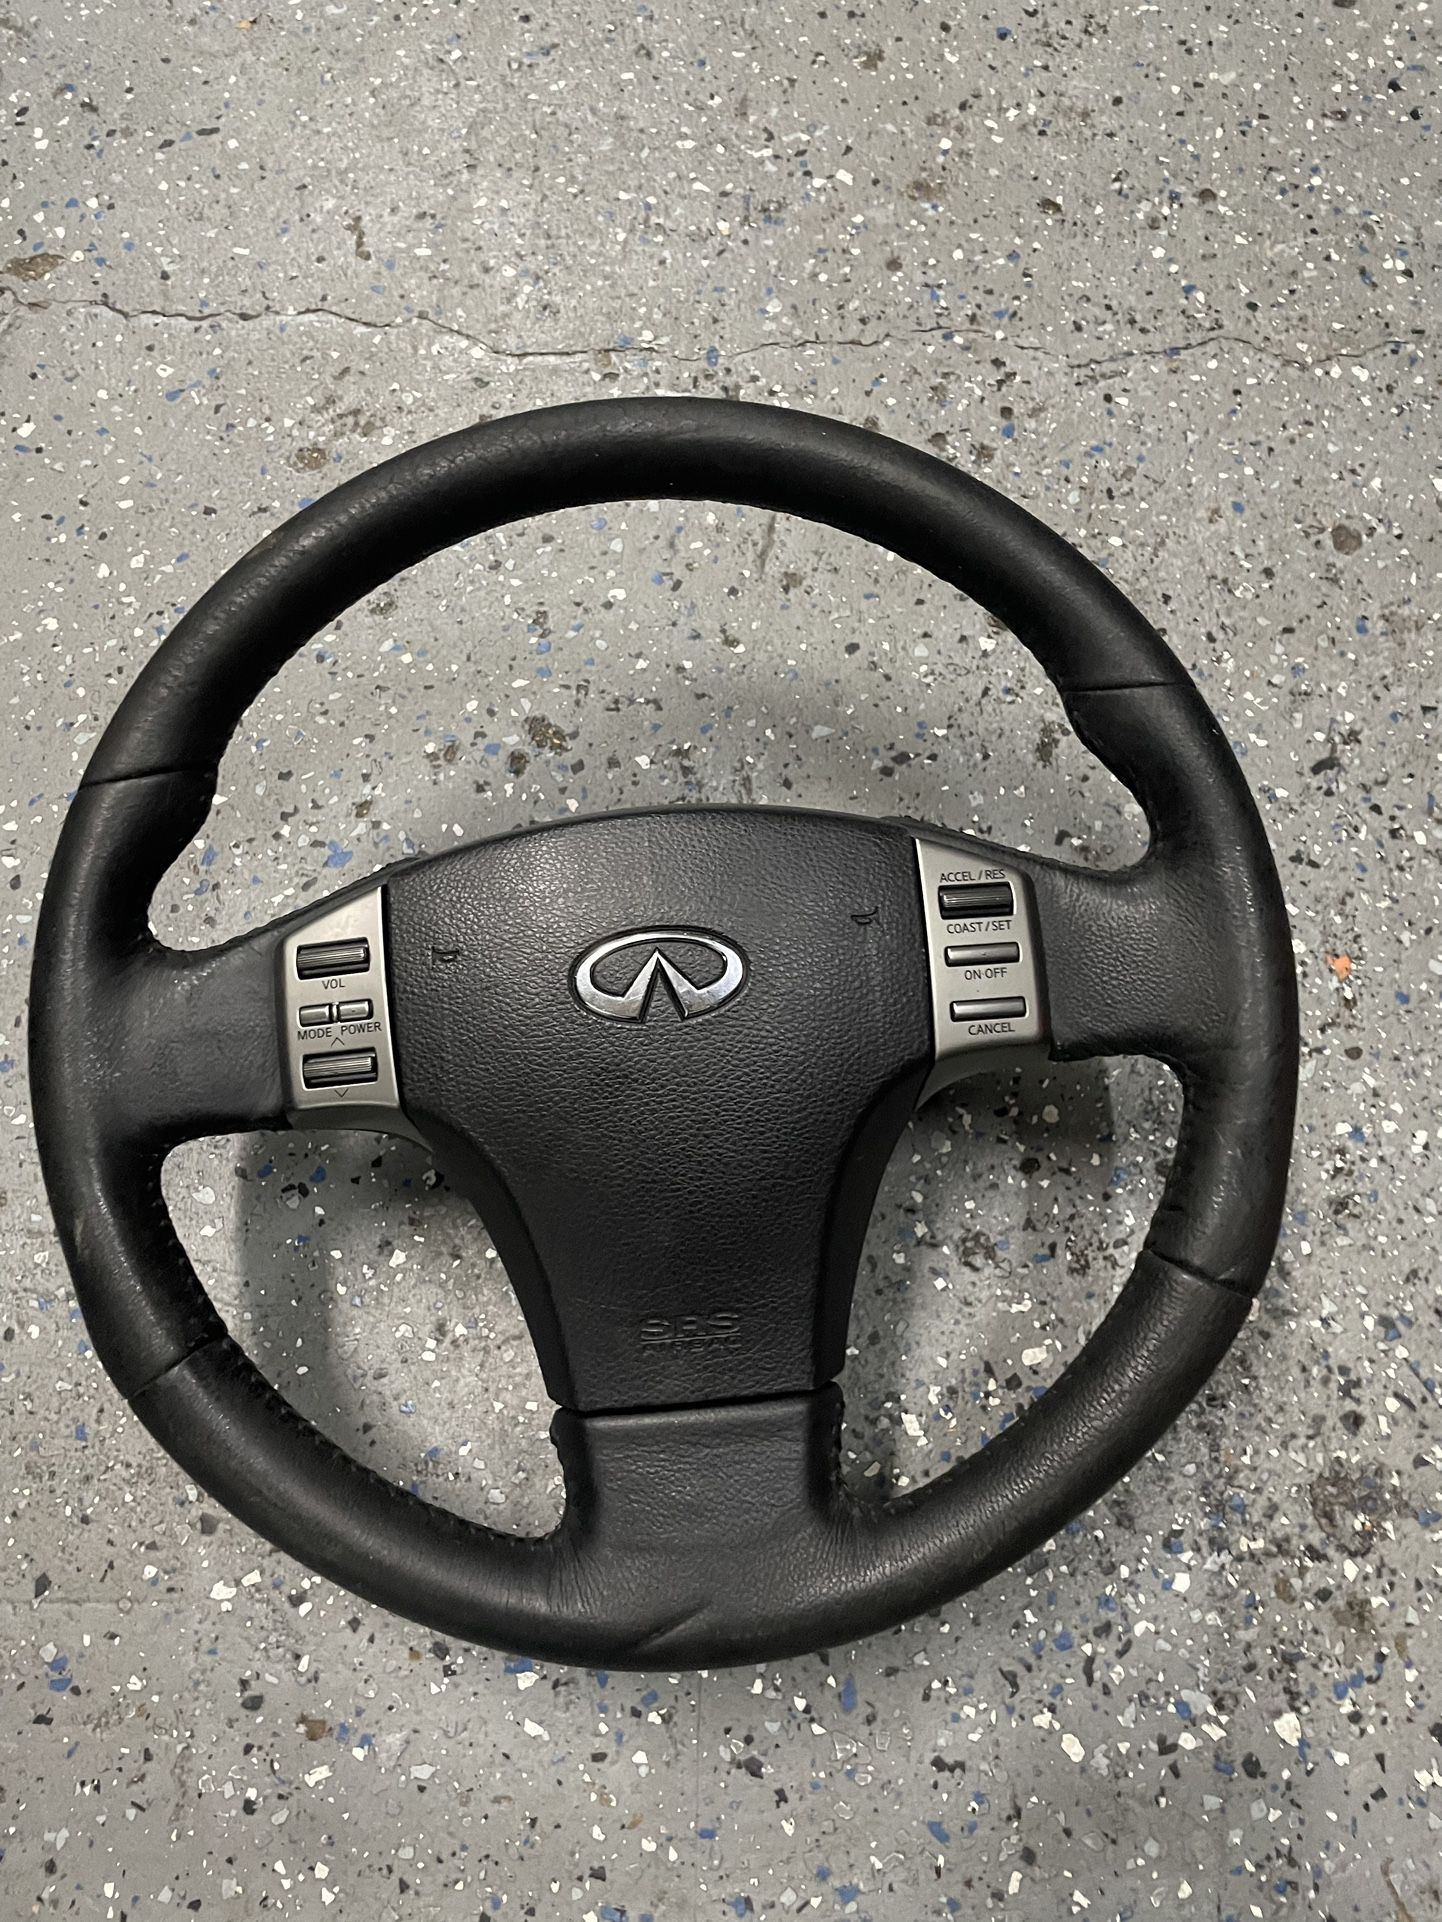 G35 Steering Wheel